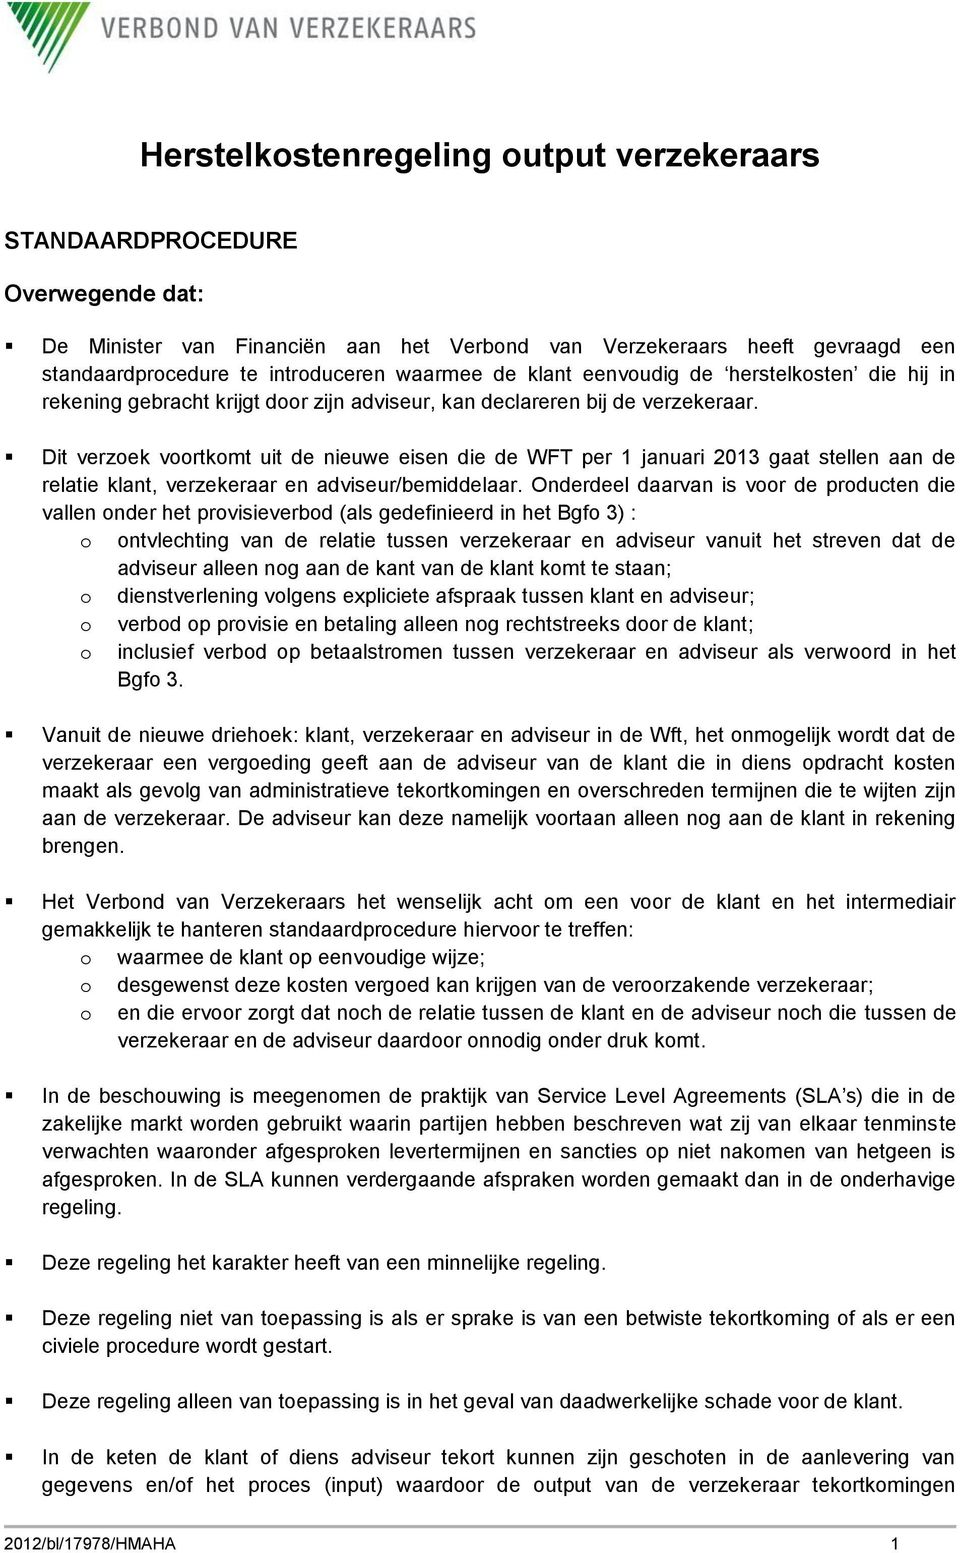 Dit verzoek voortkomt uit de nieuwe eisen die de WFT per 1 januari 2013 gaat stellen aan de relatie klant, verzekeraar en adviseur/bemiddelaar.